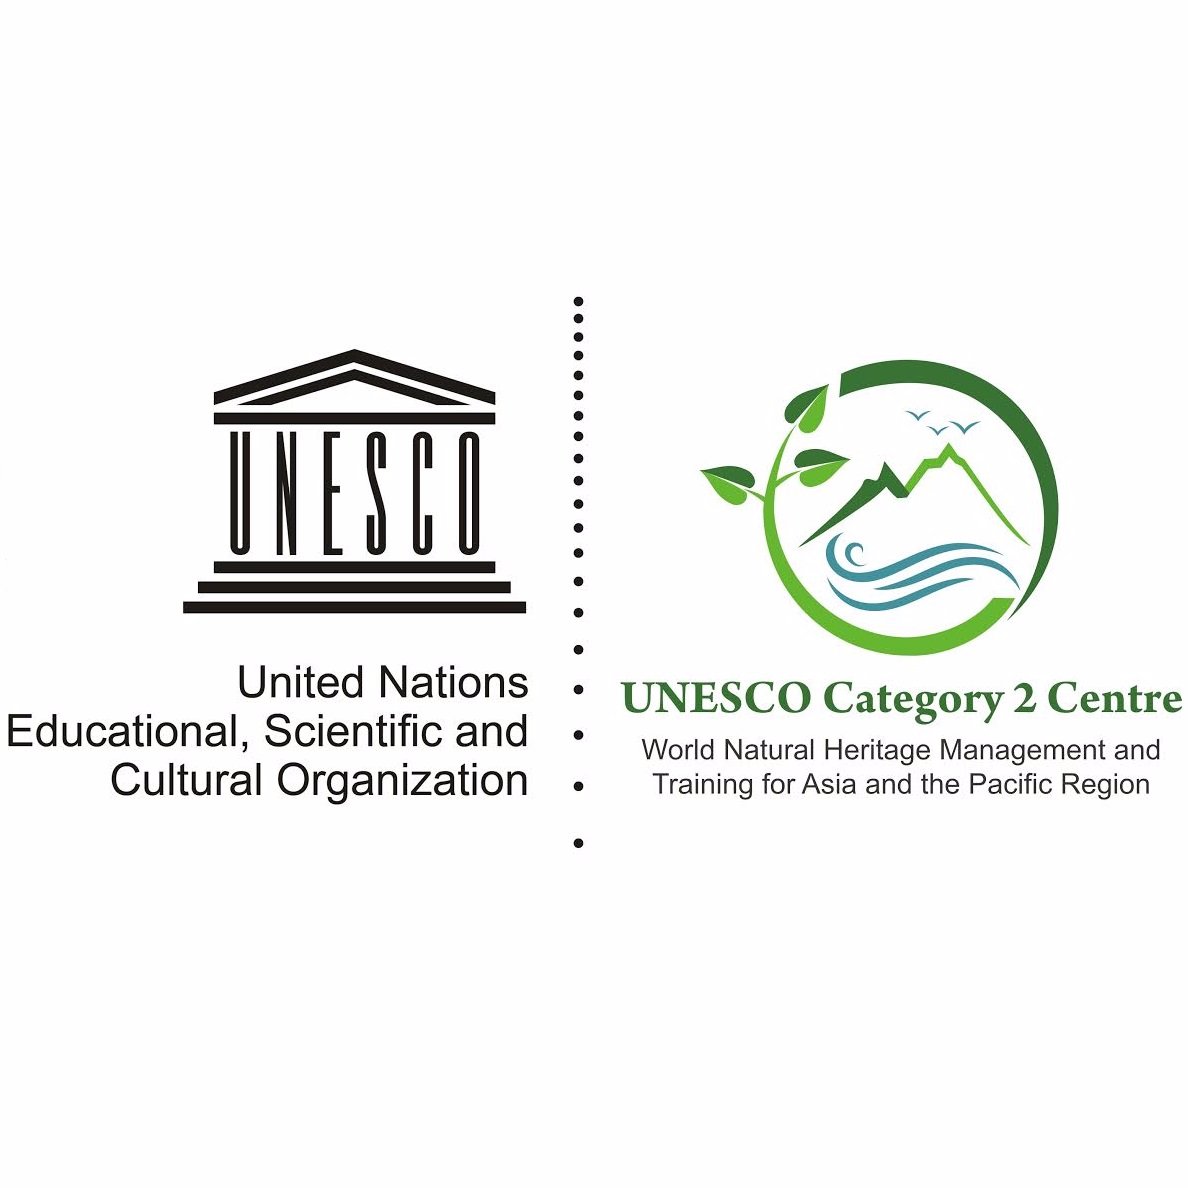 UNESCO-C2C, WII Profile